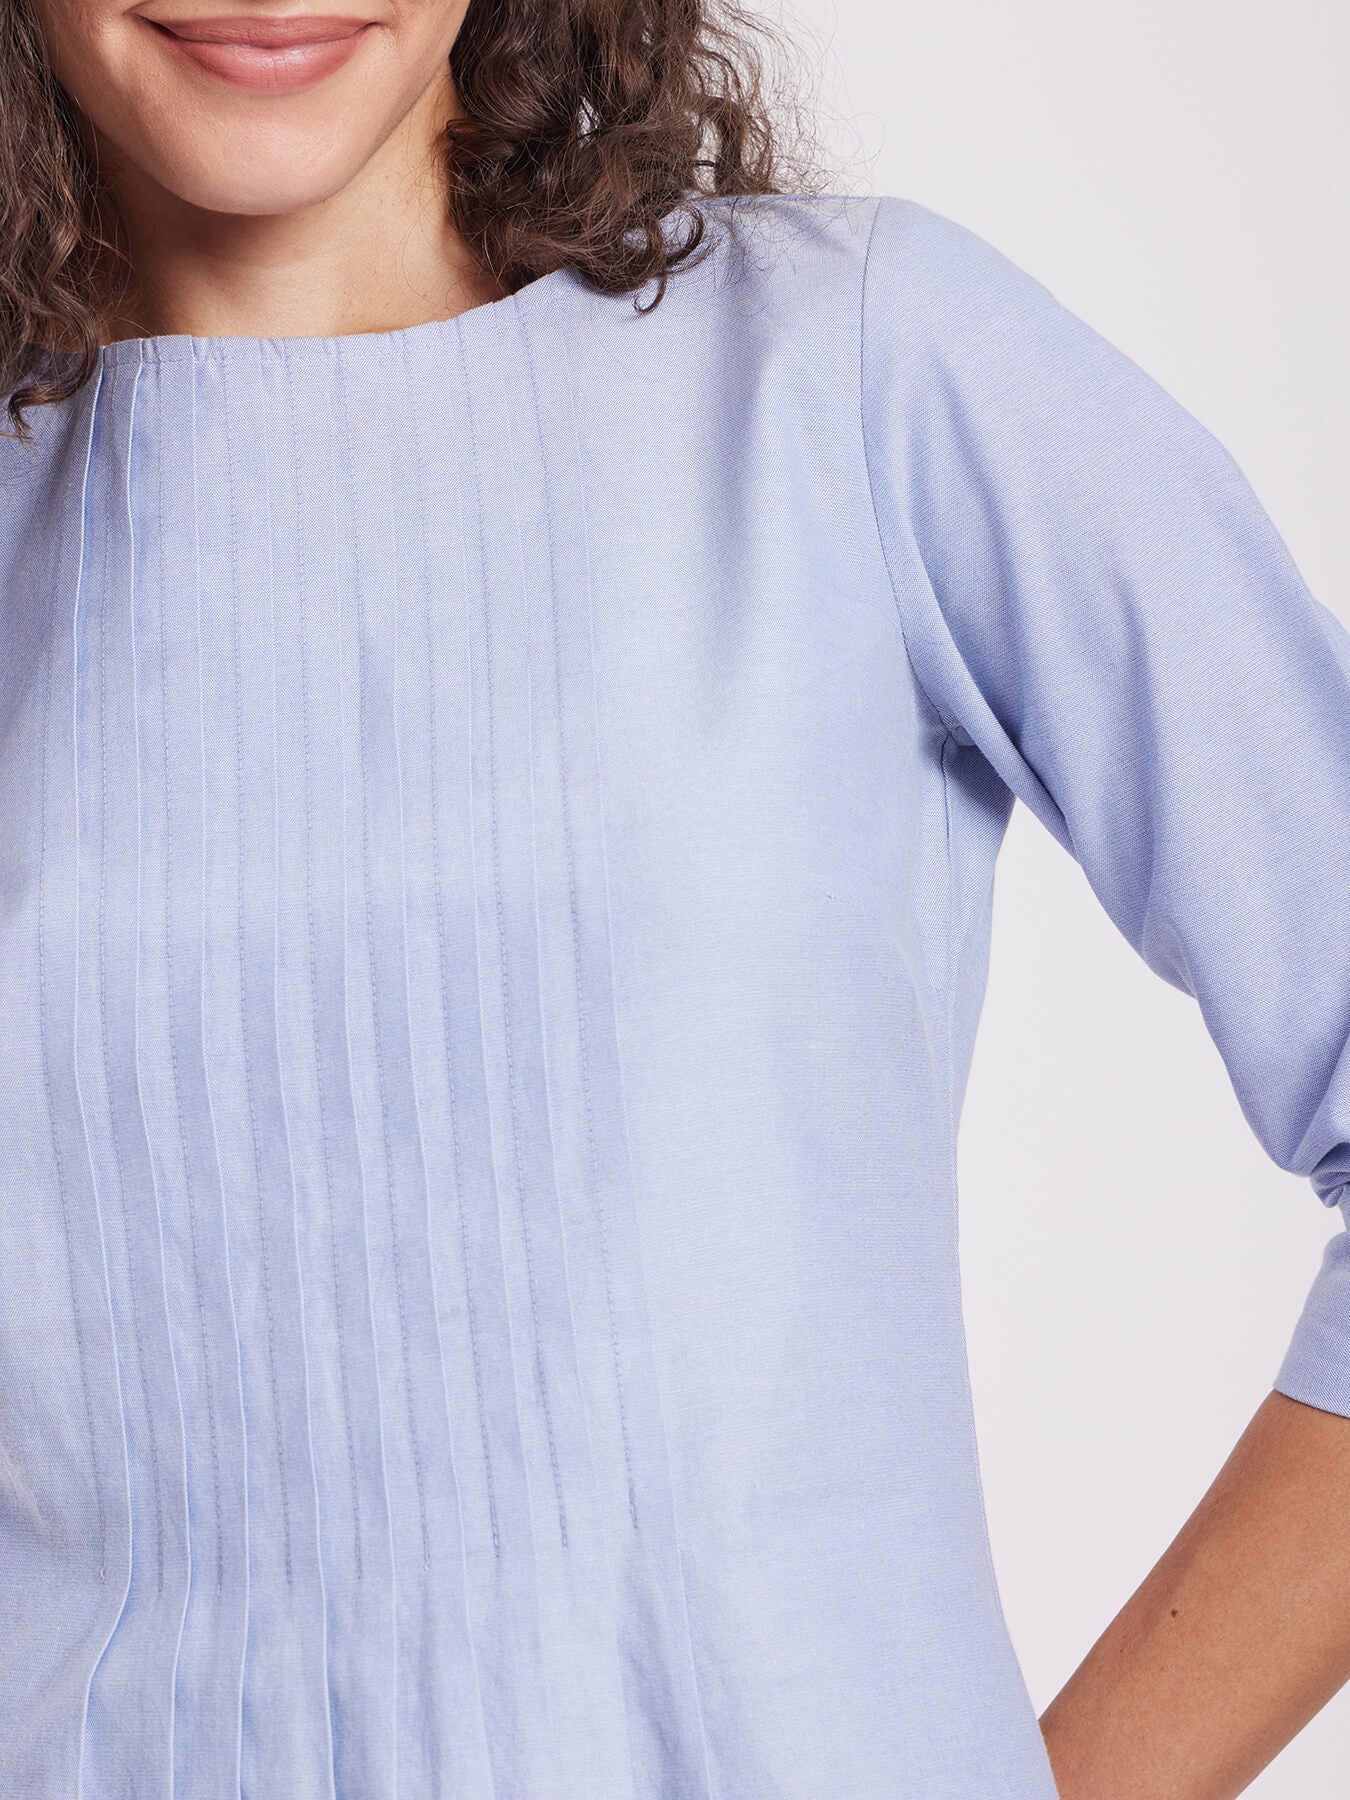 Textured Cotton Pintuck A-line Dress - Light Blue